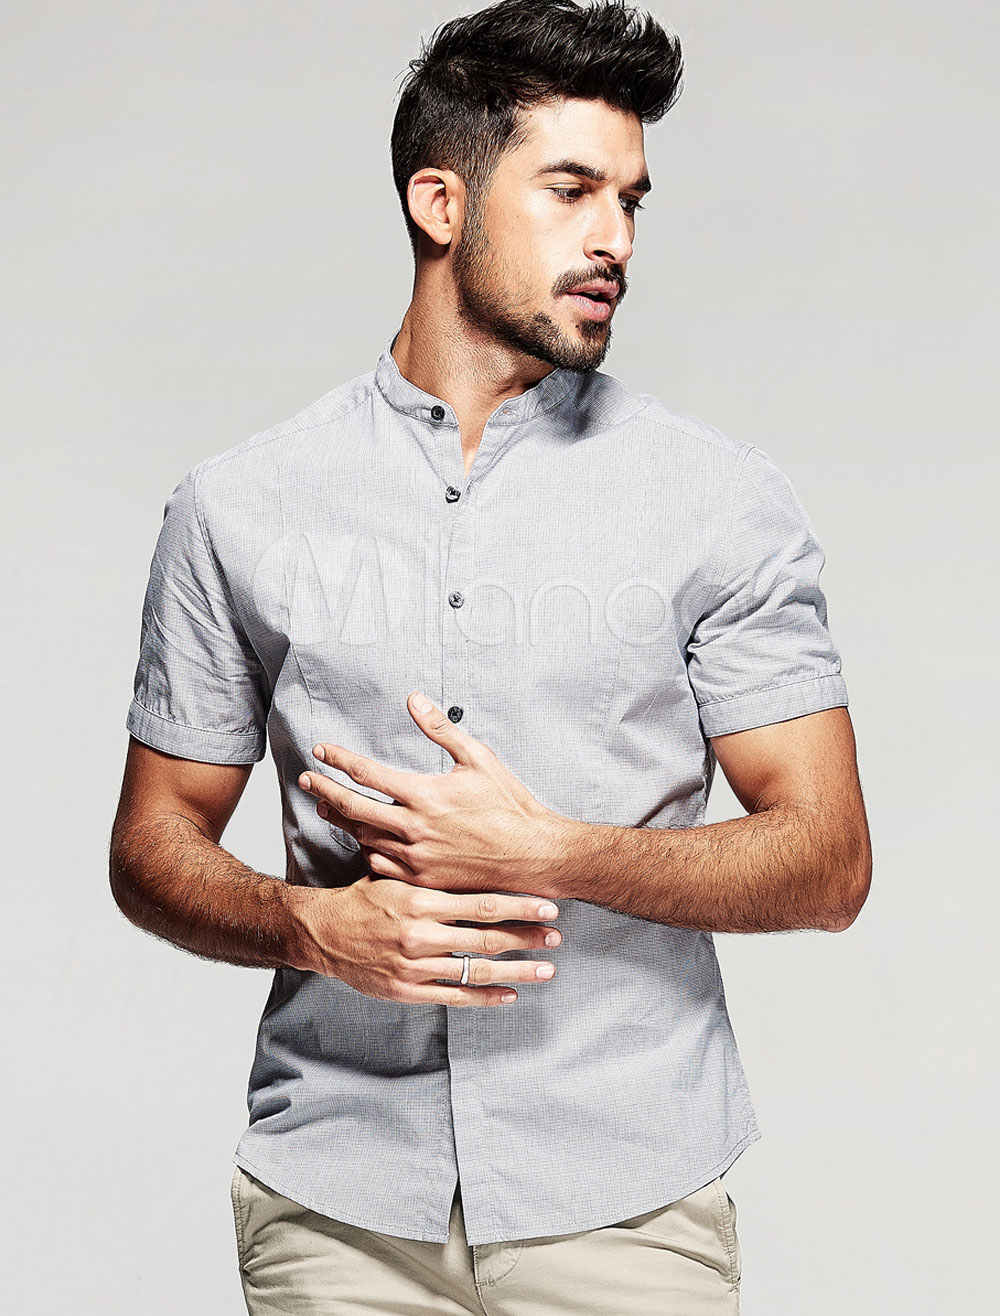 Light Gray Shirt Slim Fit Cotton Shirt for Men - Milanoo.com